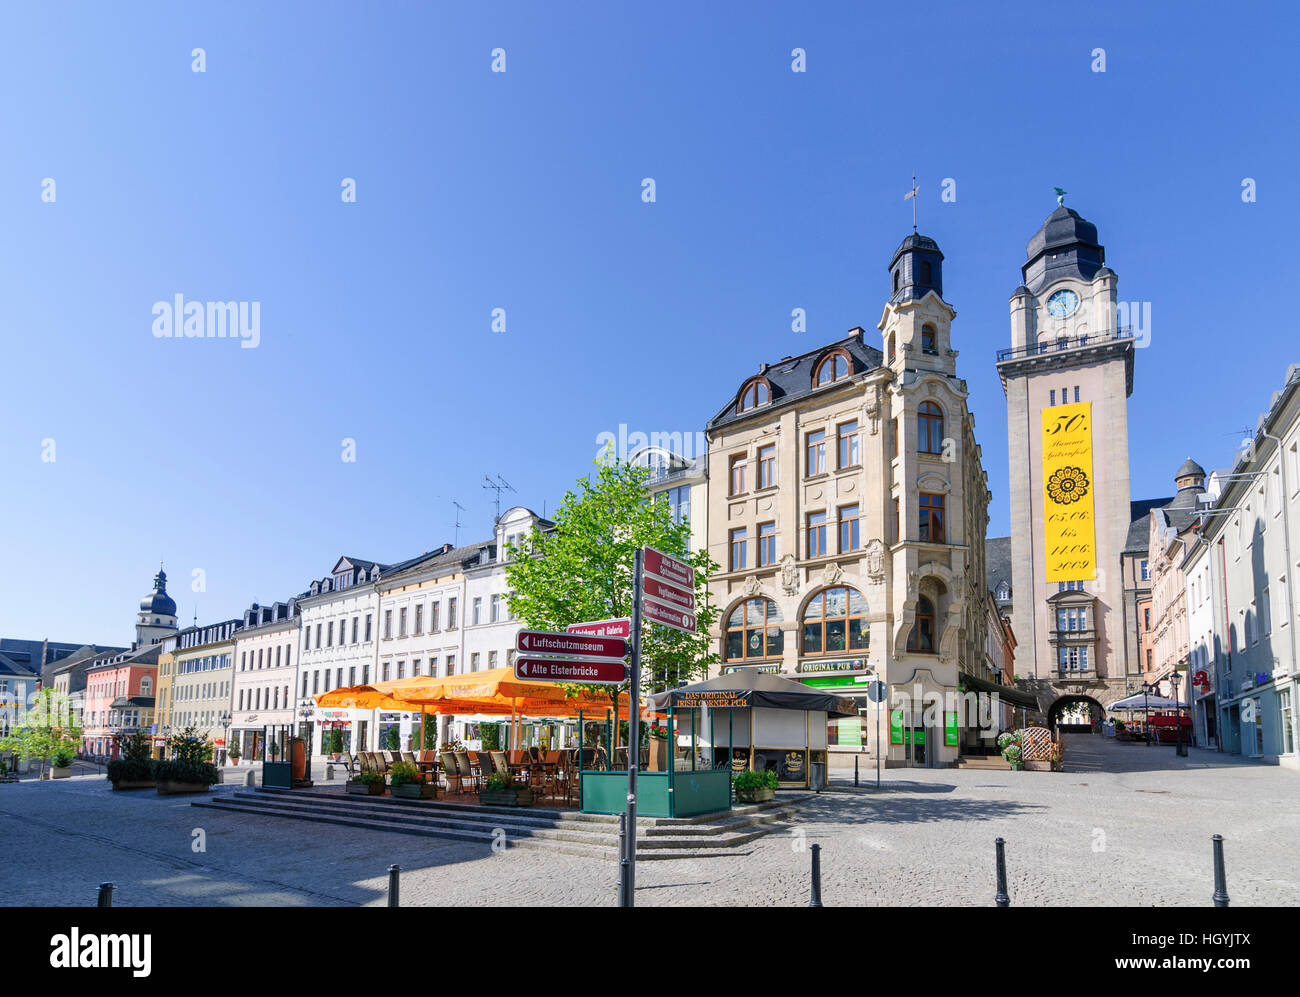 Plauen: quadratische Klostermarkt, Rathausturm, Vogtland, Sachsen, Sachsen, Deutschland Stockfoto